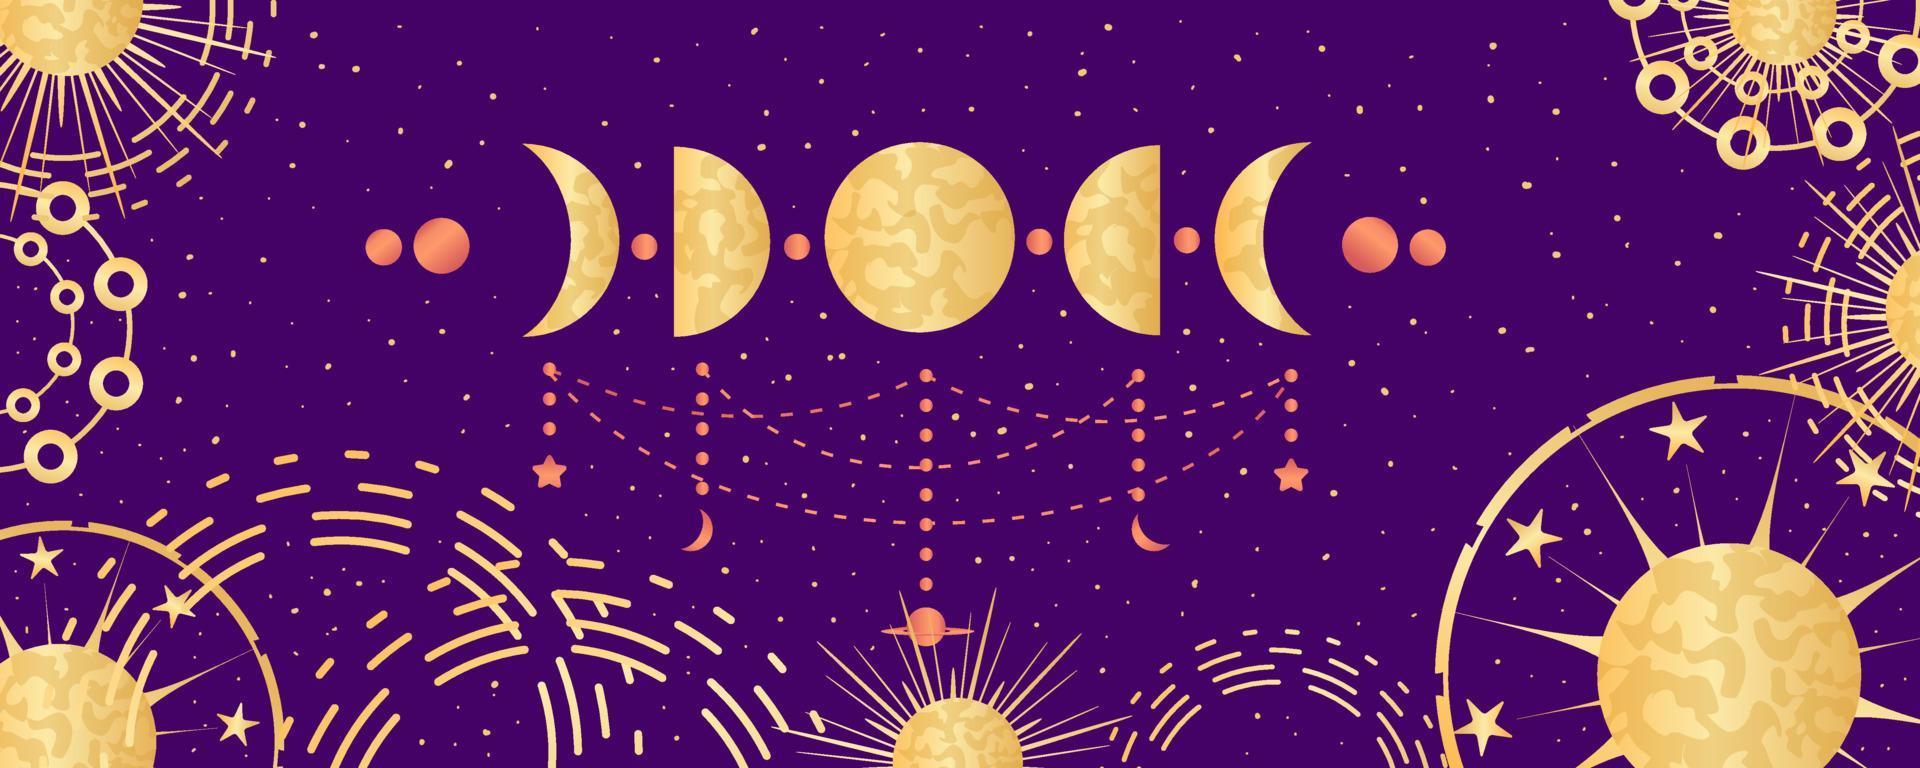 fundo astrológico celestial com fase da lua e constelações. astrologia mística, espaço celestial com sinais dourados. ilustração vetorial vetor